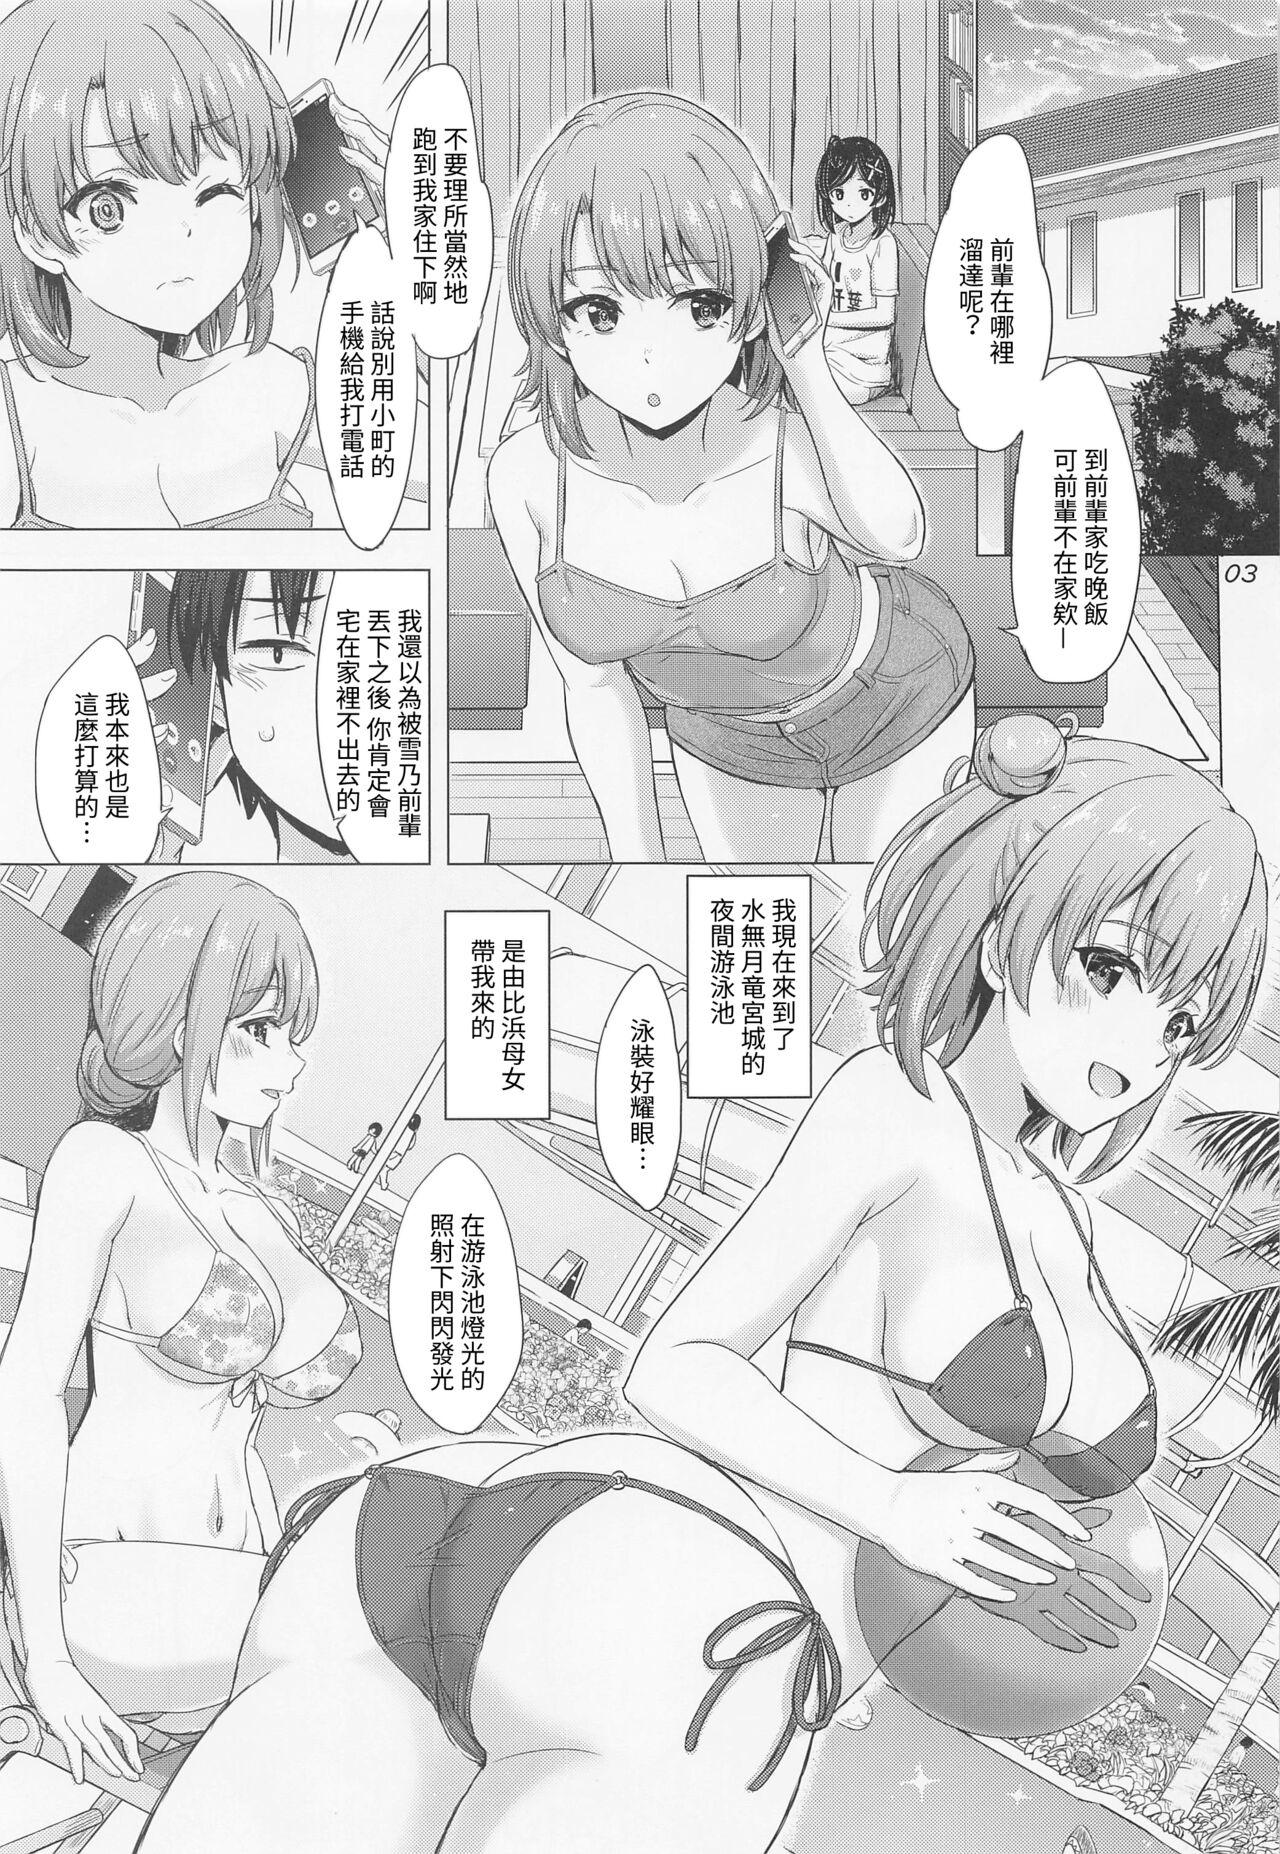 Porno Jounetsuteki na Natsu no Resort o Yuigahama Oyako to. - Yahari ore no seishun love come wa machigatteiru Women Sucking Dick - Page 2